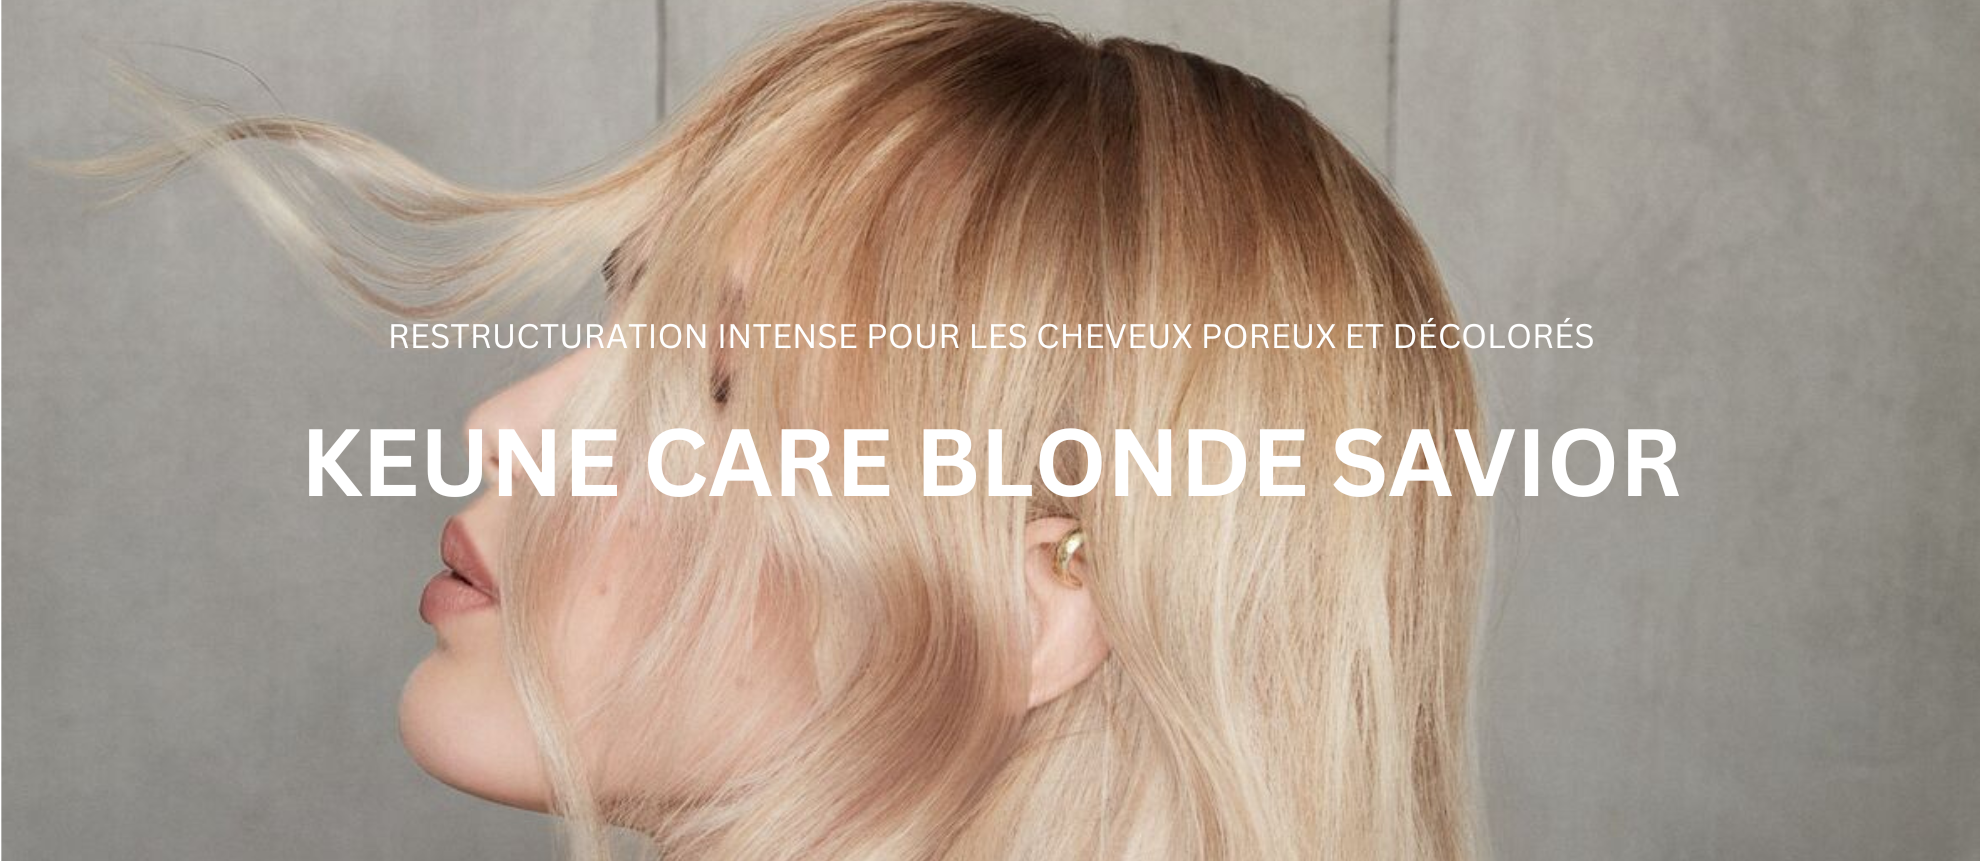 Profitez d'un blond lumineux avec Keune Care Blonde Savior - Shampooing, masque capillaire, soin sans rinçage sur keune.ch.